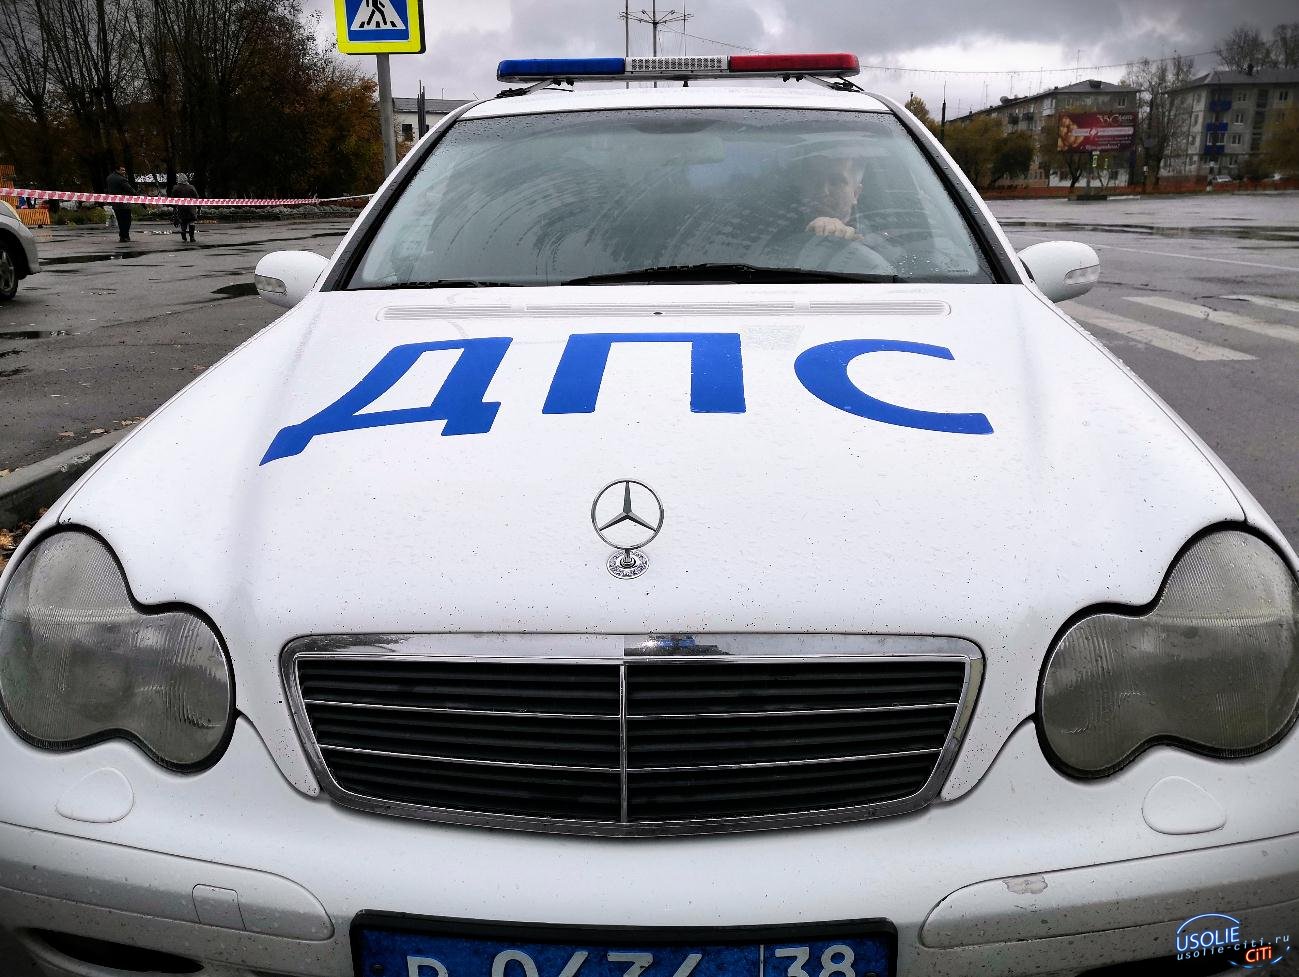  Усольская Госавтоинспекция провела проверку водителей на состояние опьянения